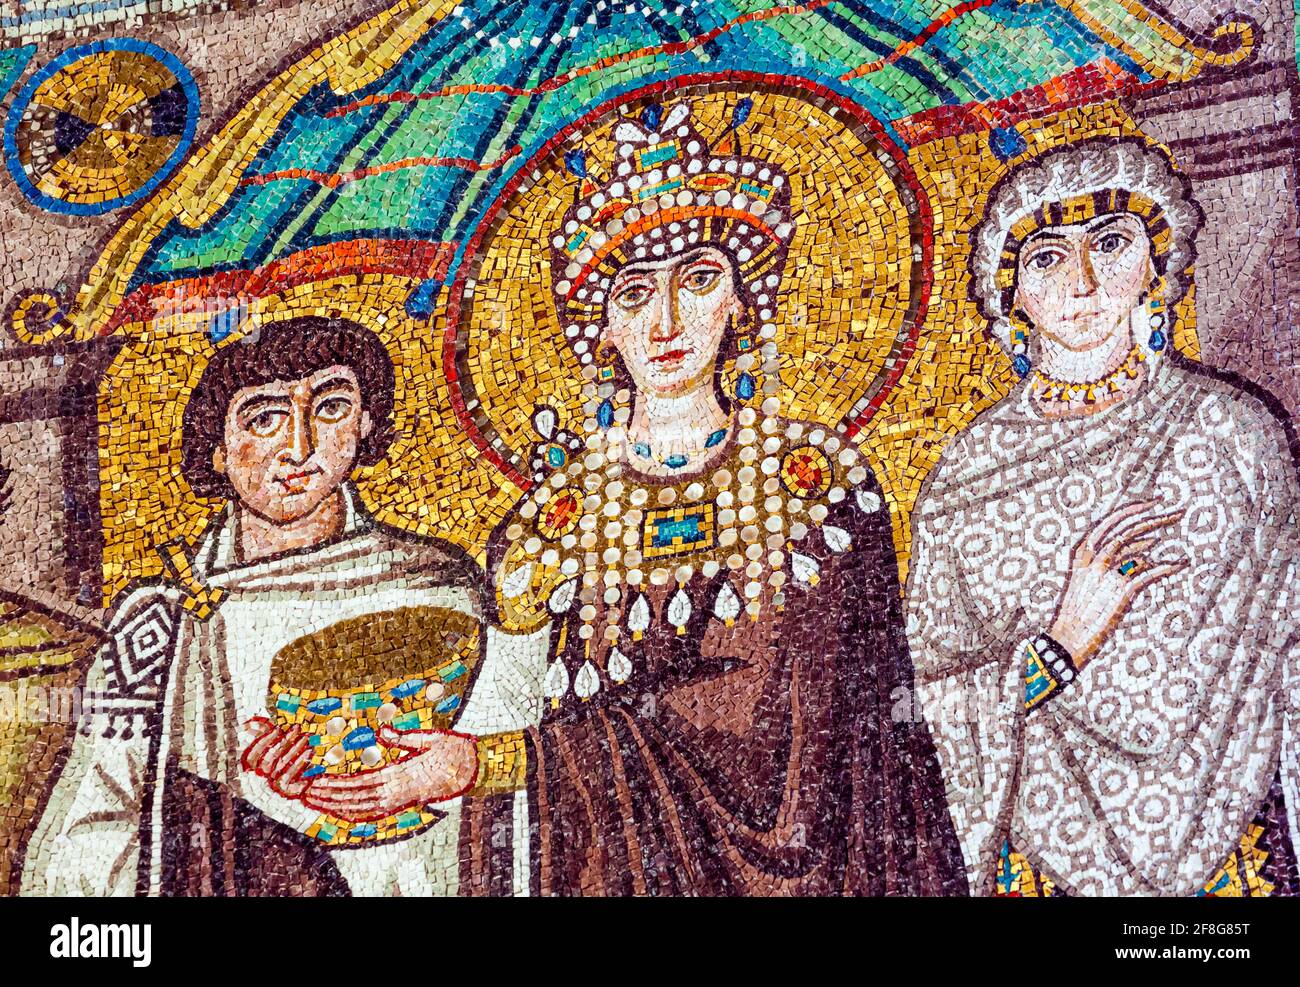 Ravenna, provincia di Ravenna, Italia. Particolare del mosaico del VI secolo nella Basilica di San vitale che mostra l'imperatrice Teodora con la sua corte. Sta tenendo la co Foto Stock